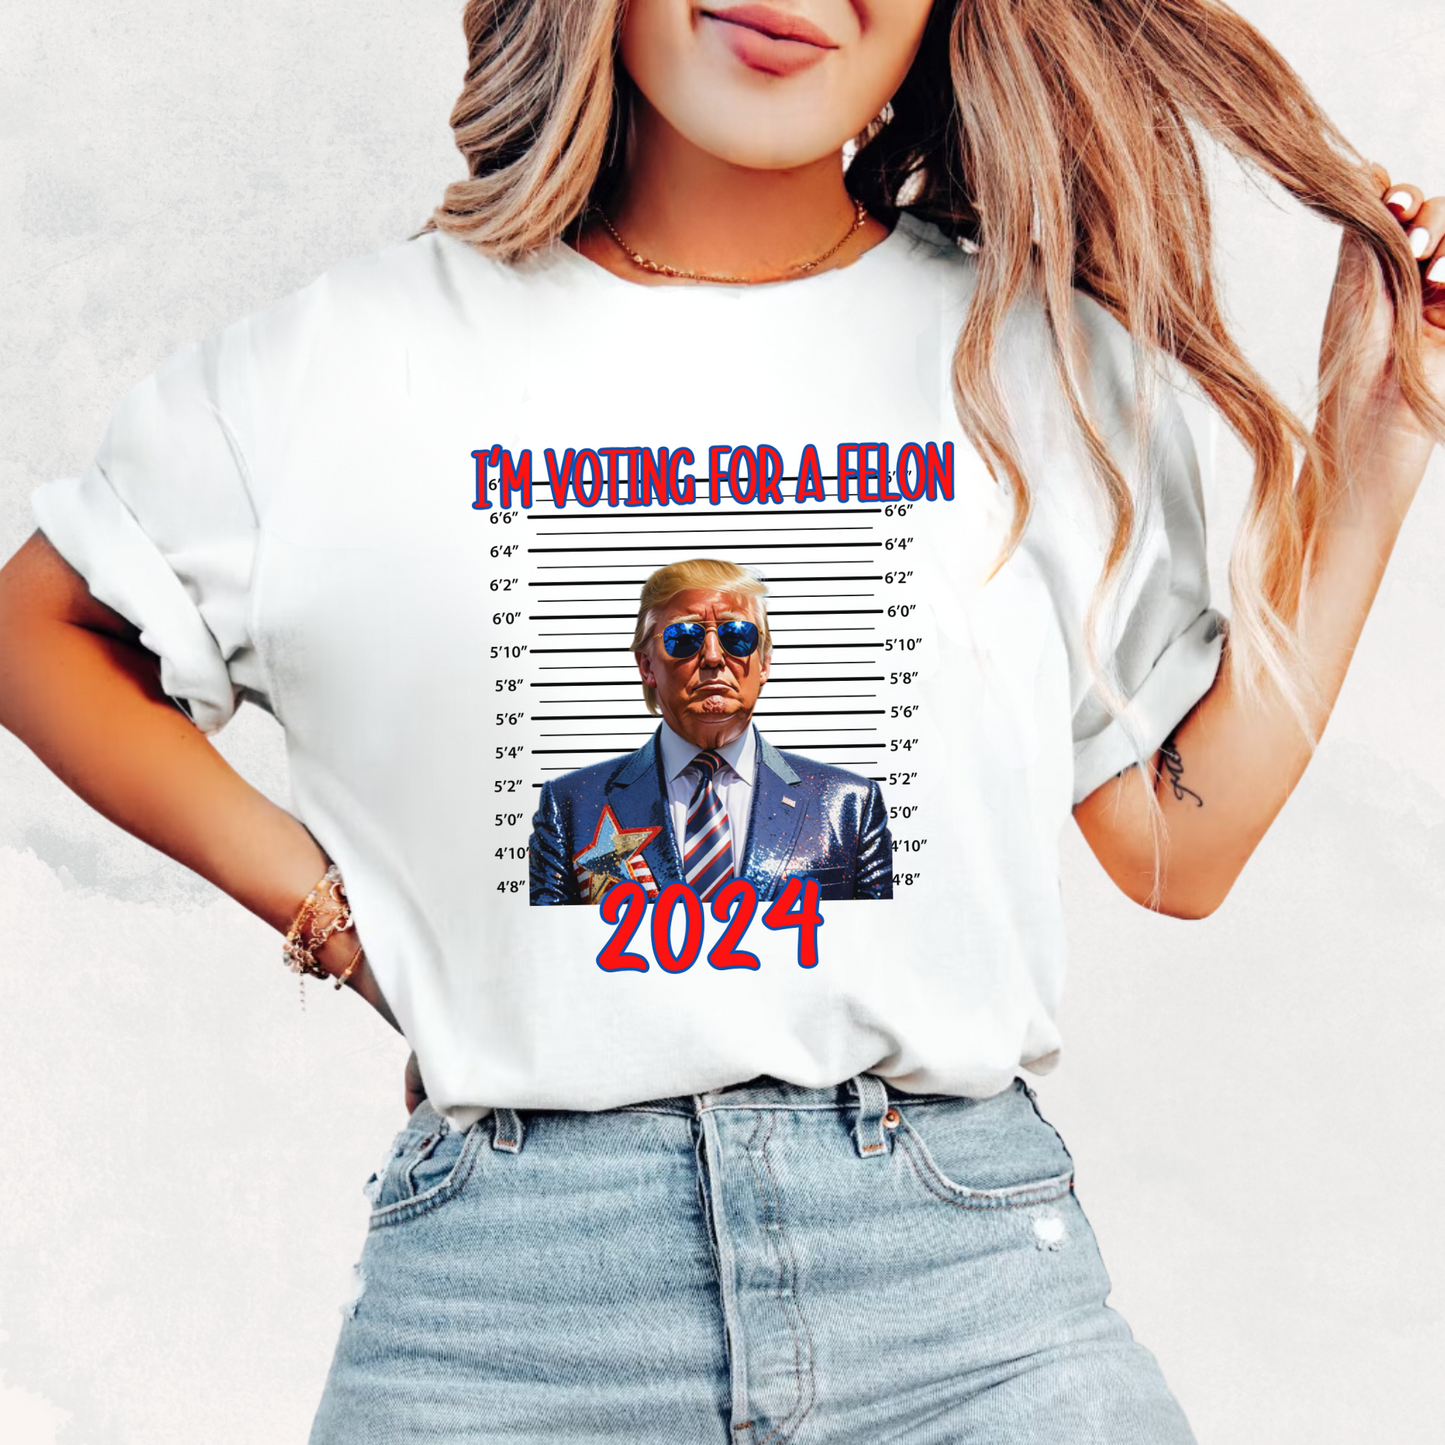 I'm Voting for a Felon Trump T-Shirt